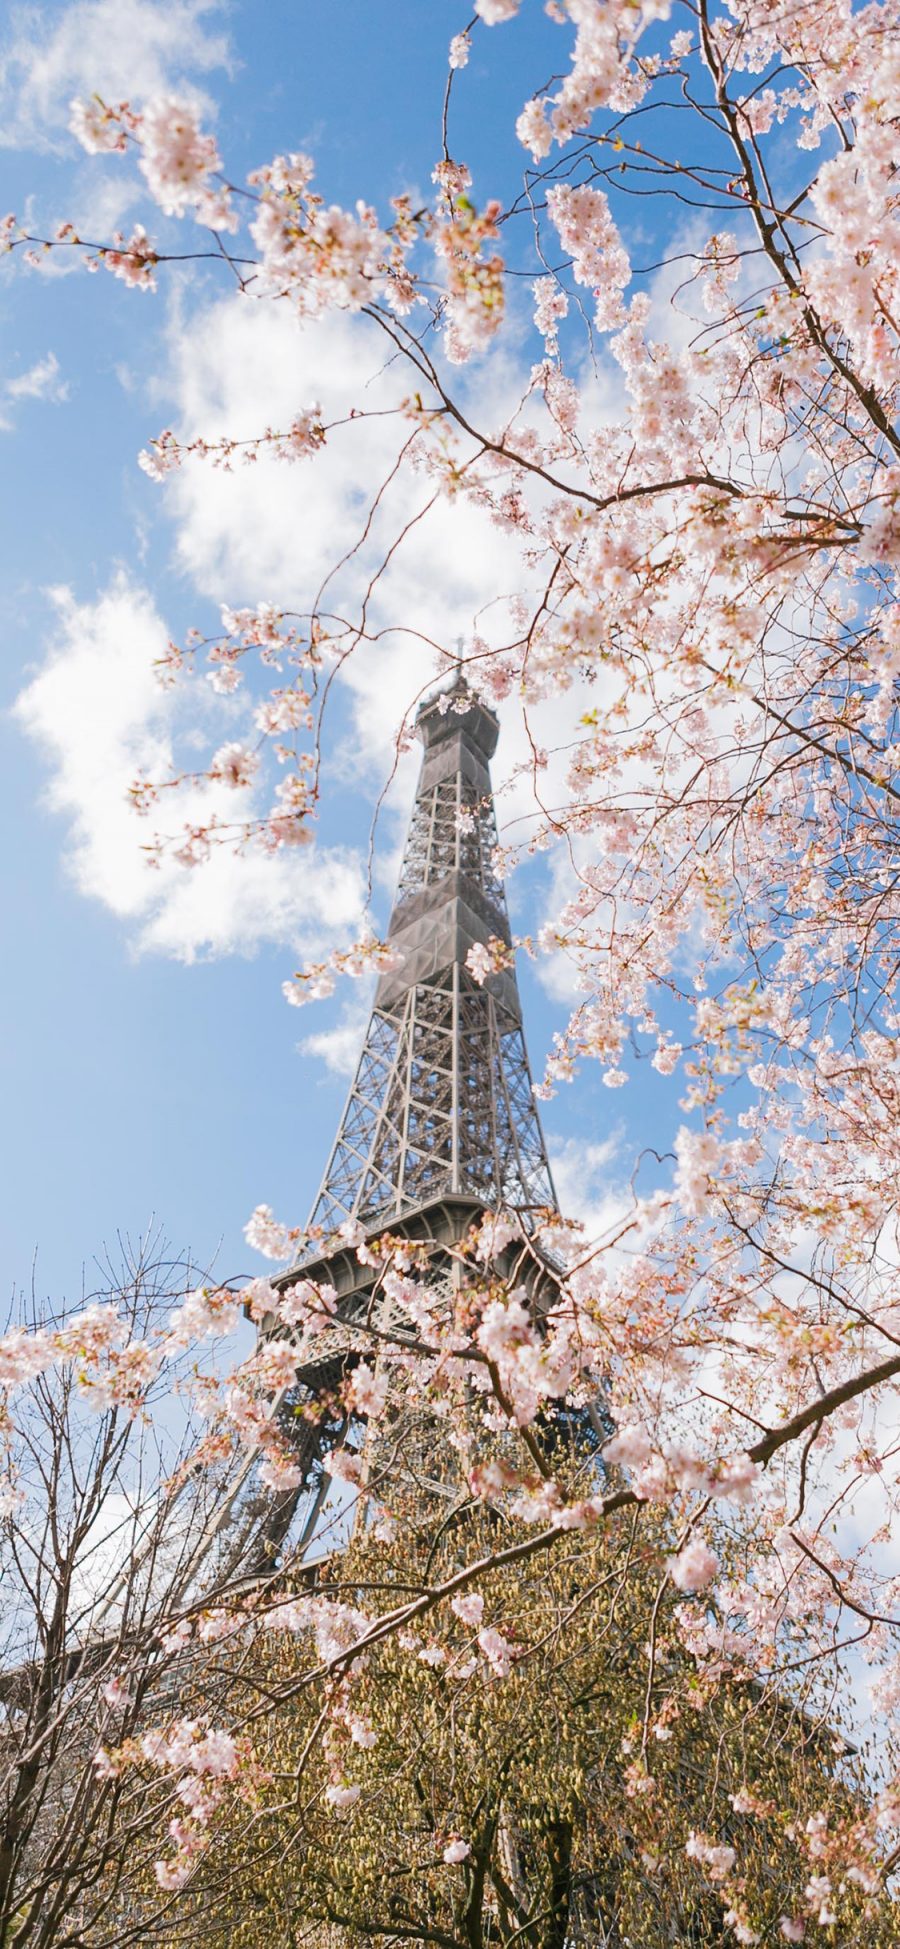 [2436×1125]埃菲尔铁塔 法国 巴黎 樱花 建筑 苹果手机壁纸图片